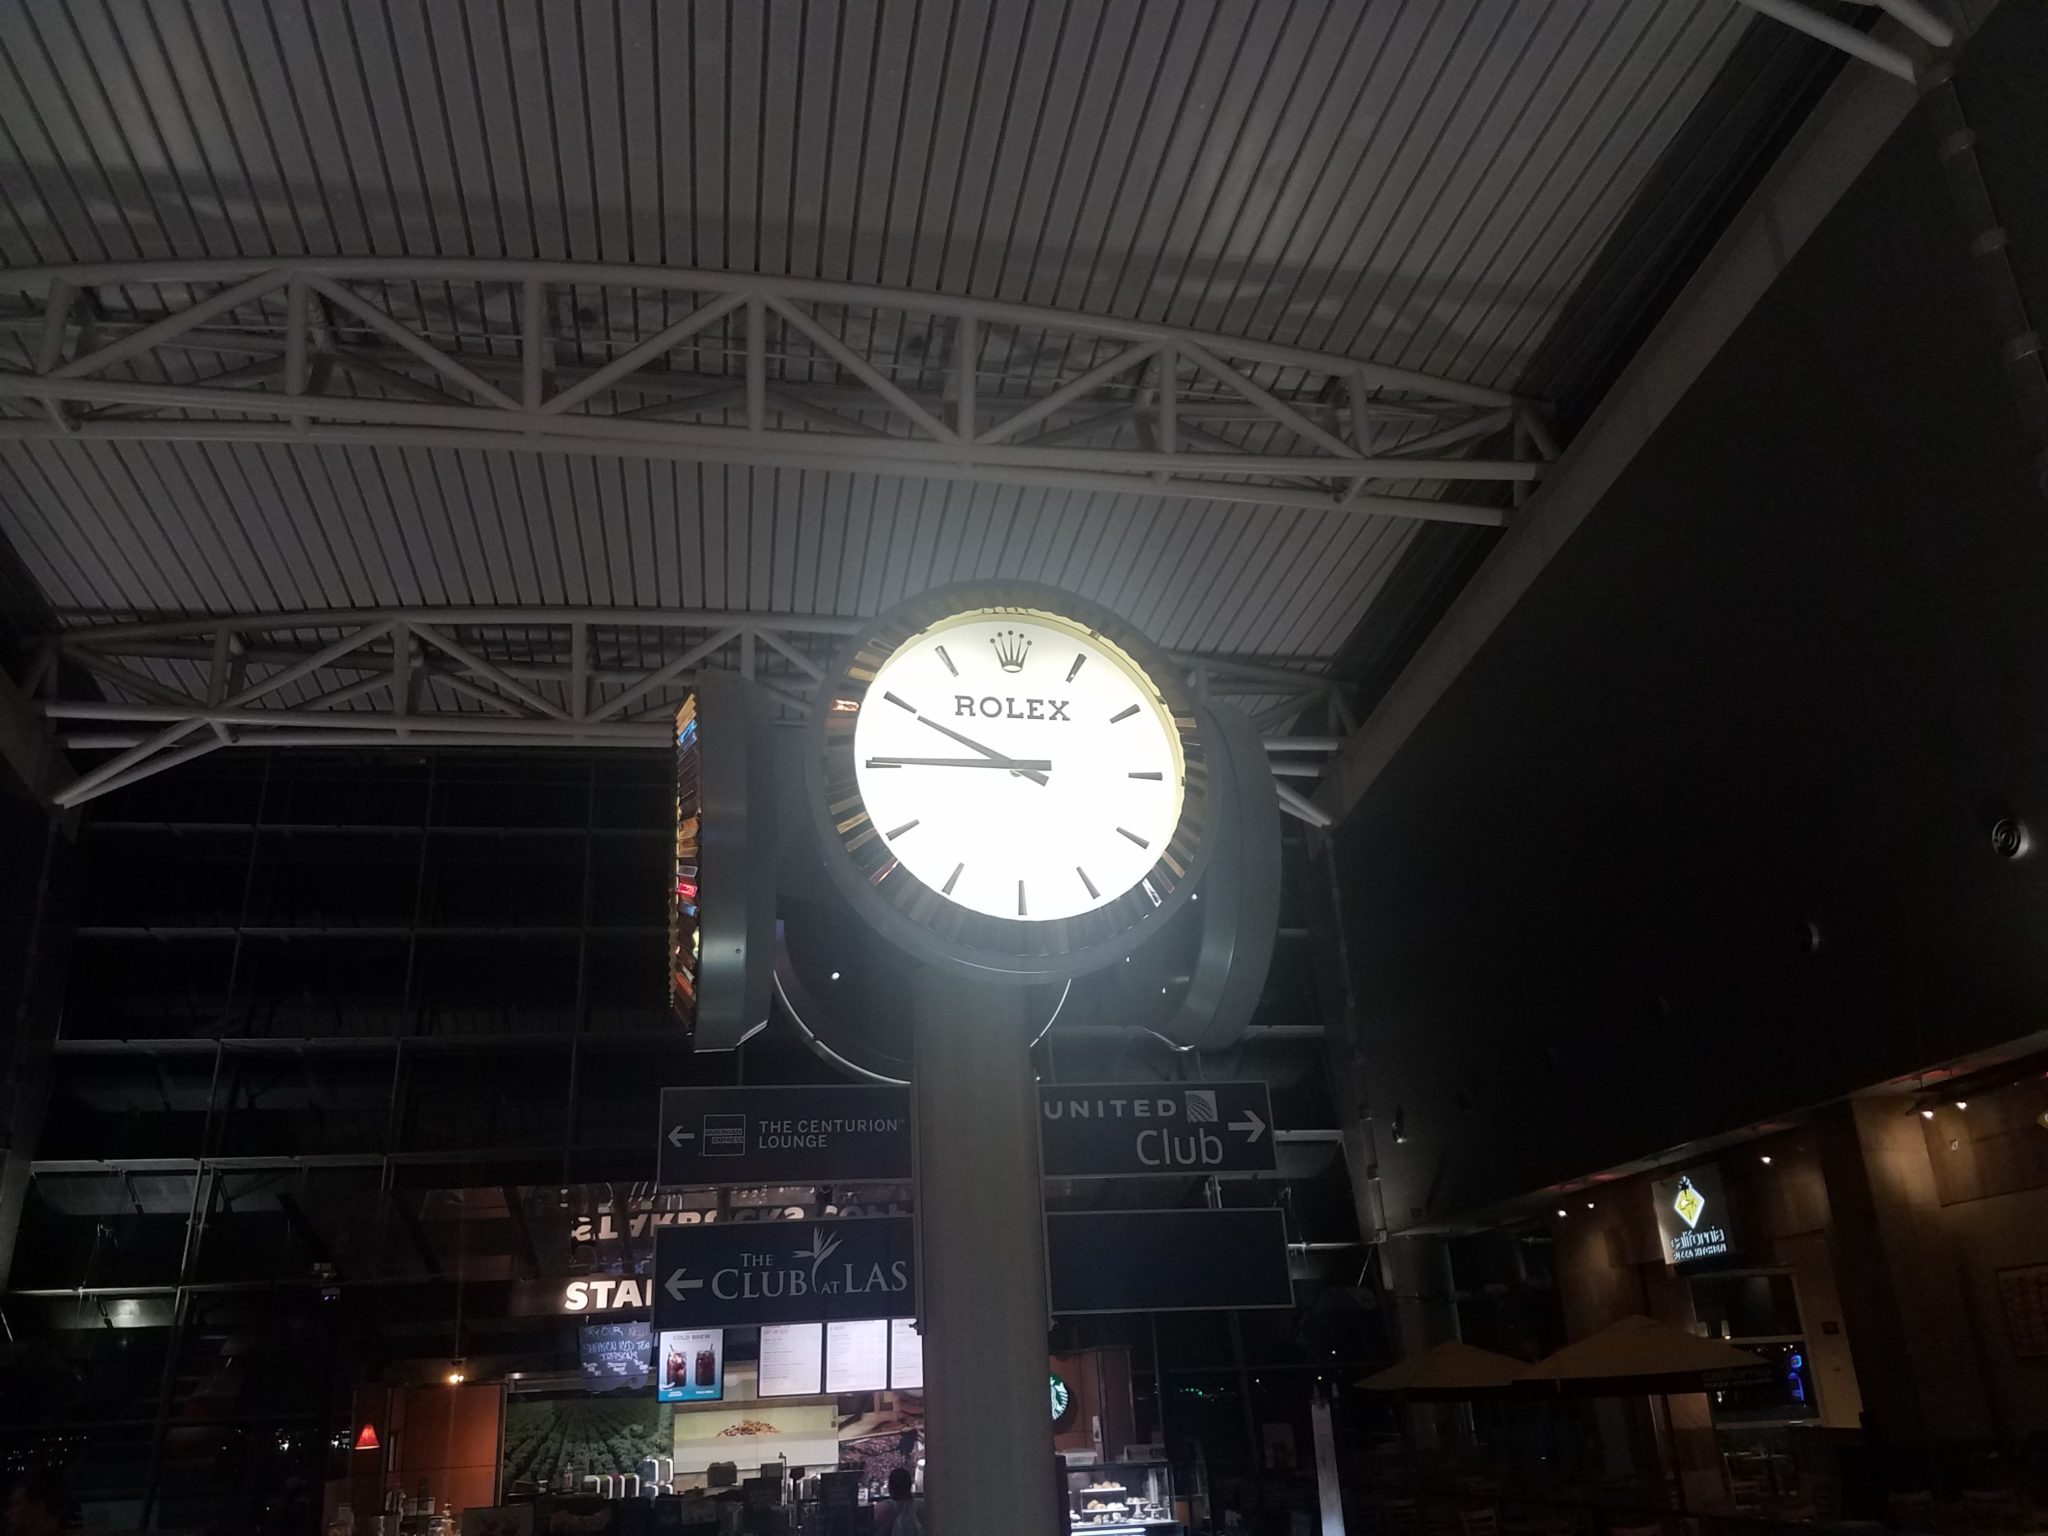 a clock in a building